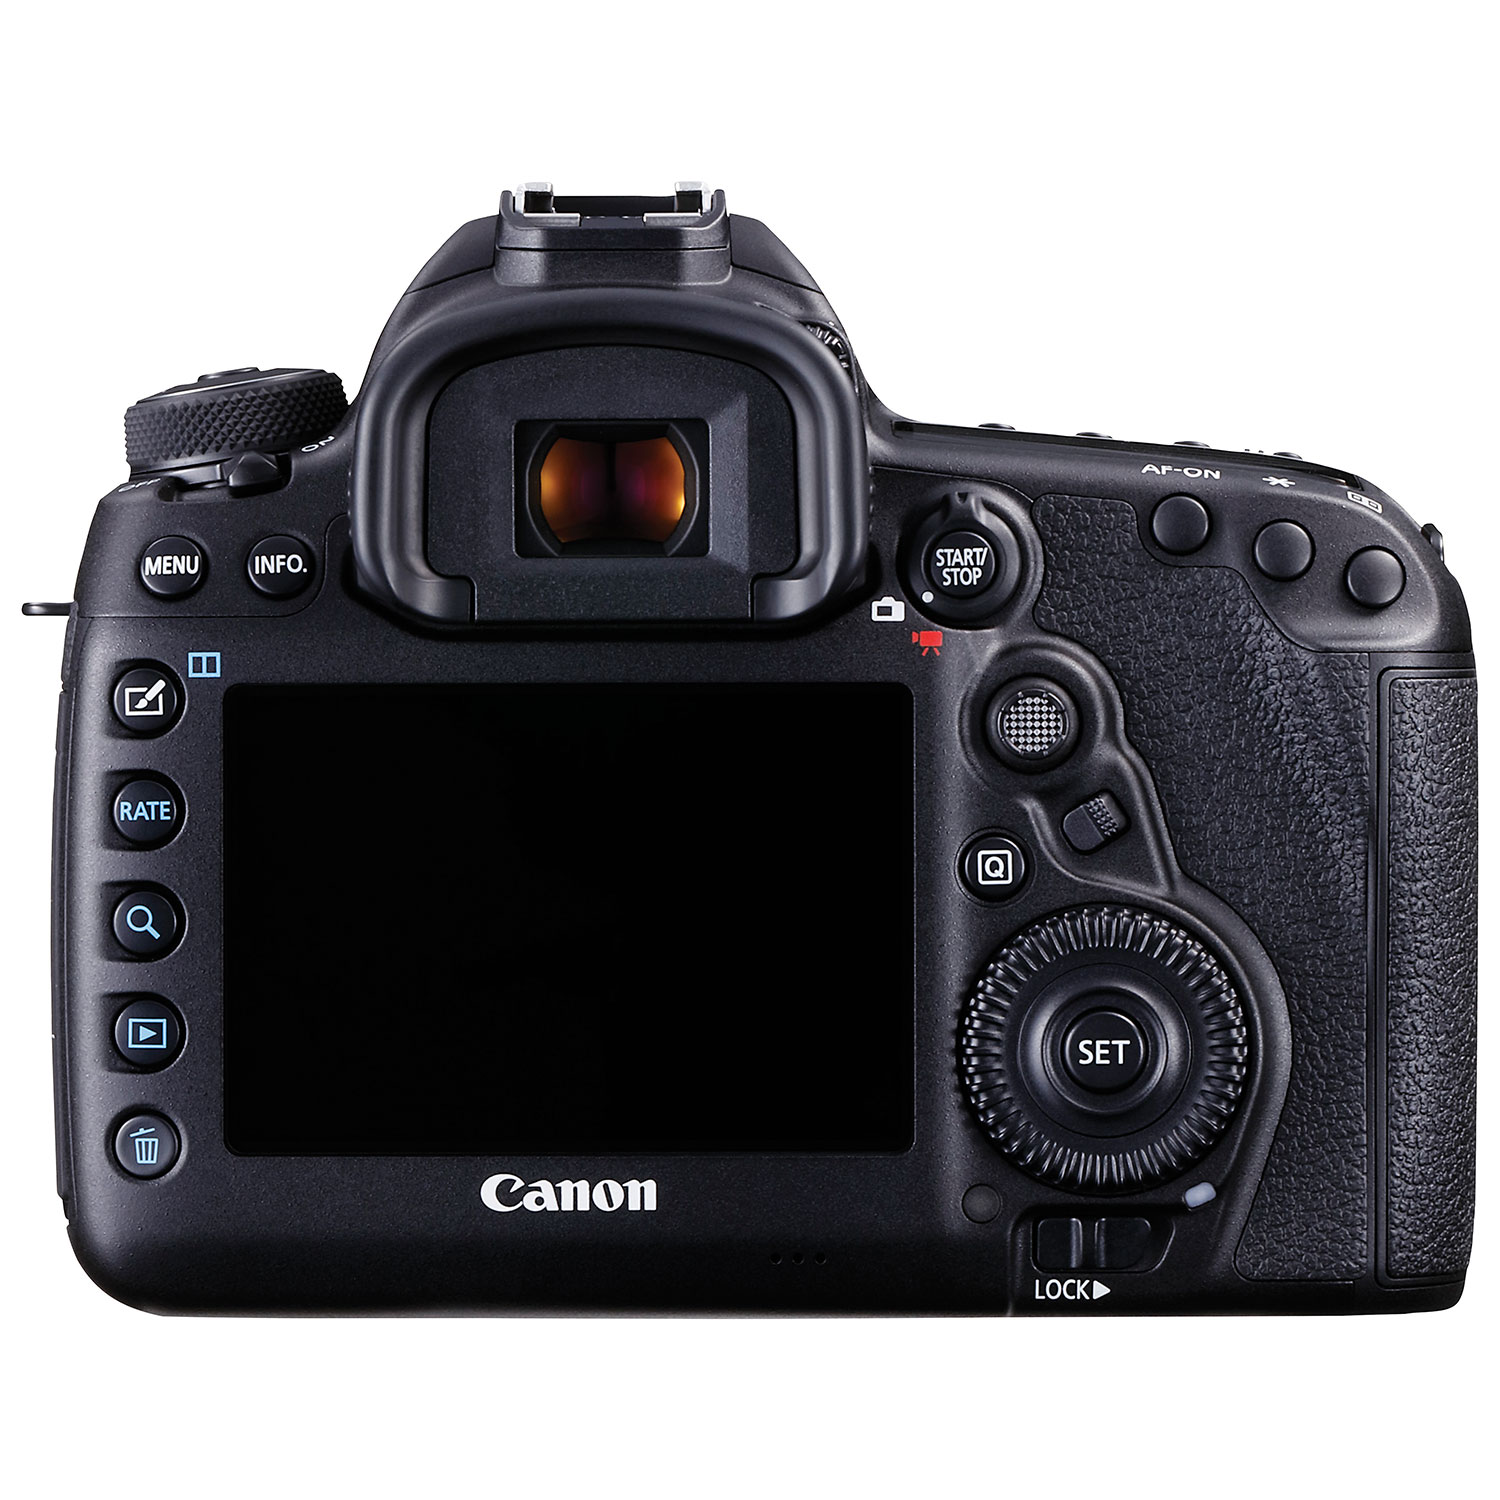 Canon EOS 5D Mark IV Full Frame DSLR Camera (Body Only)